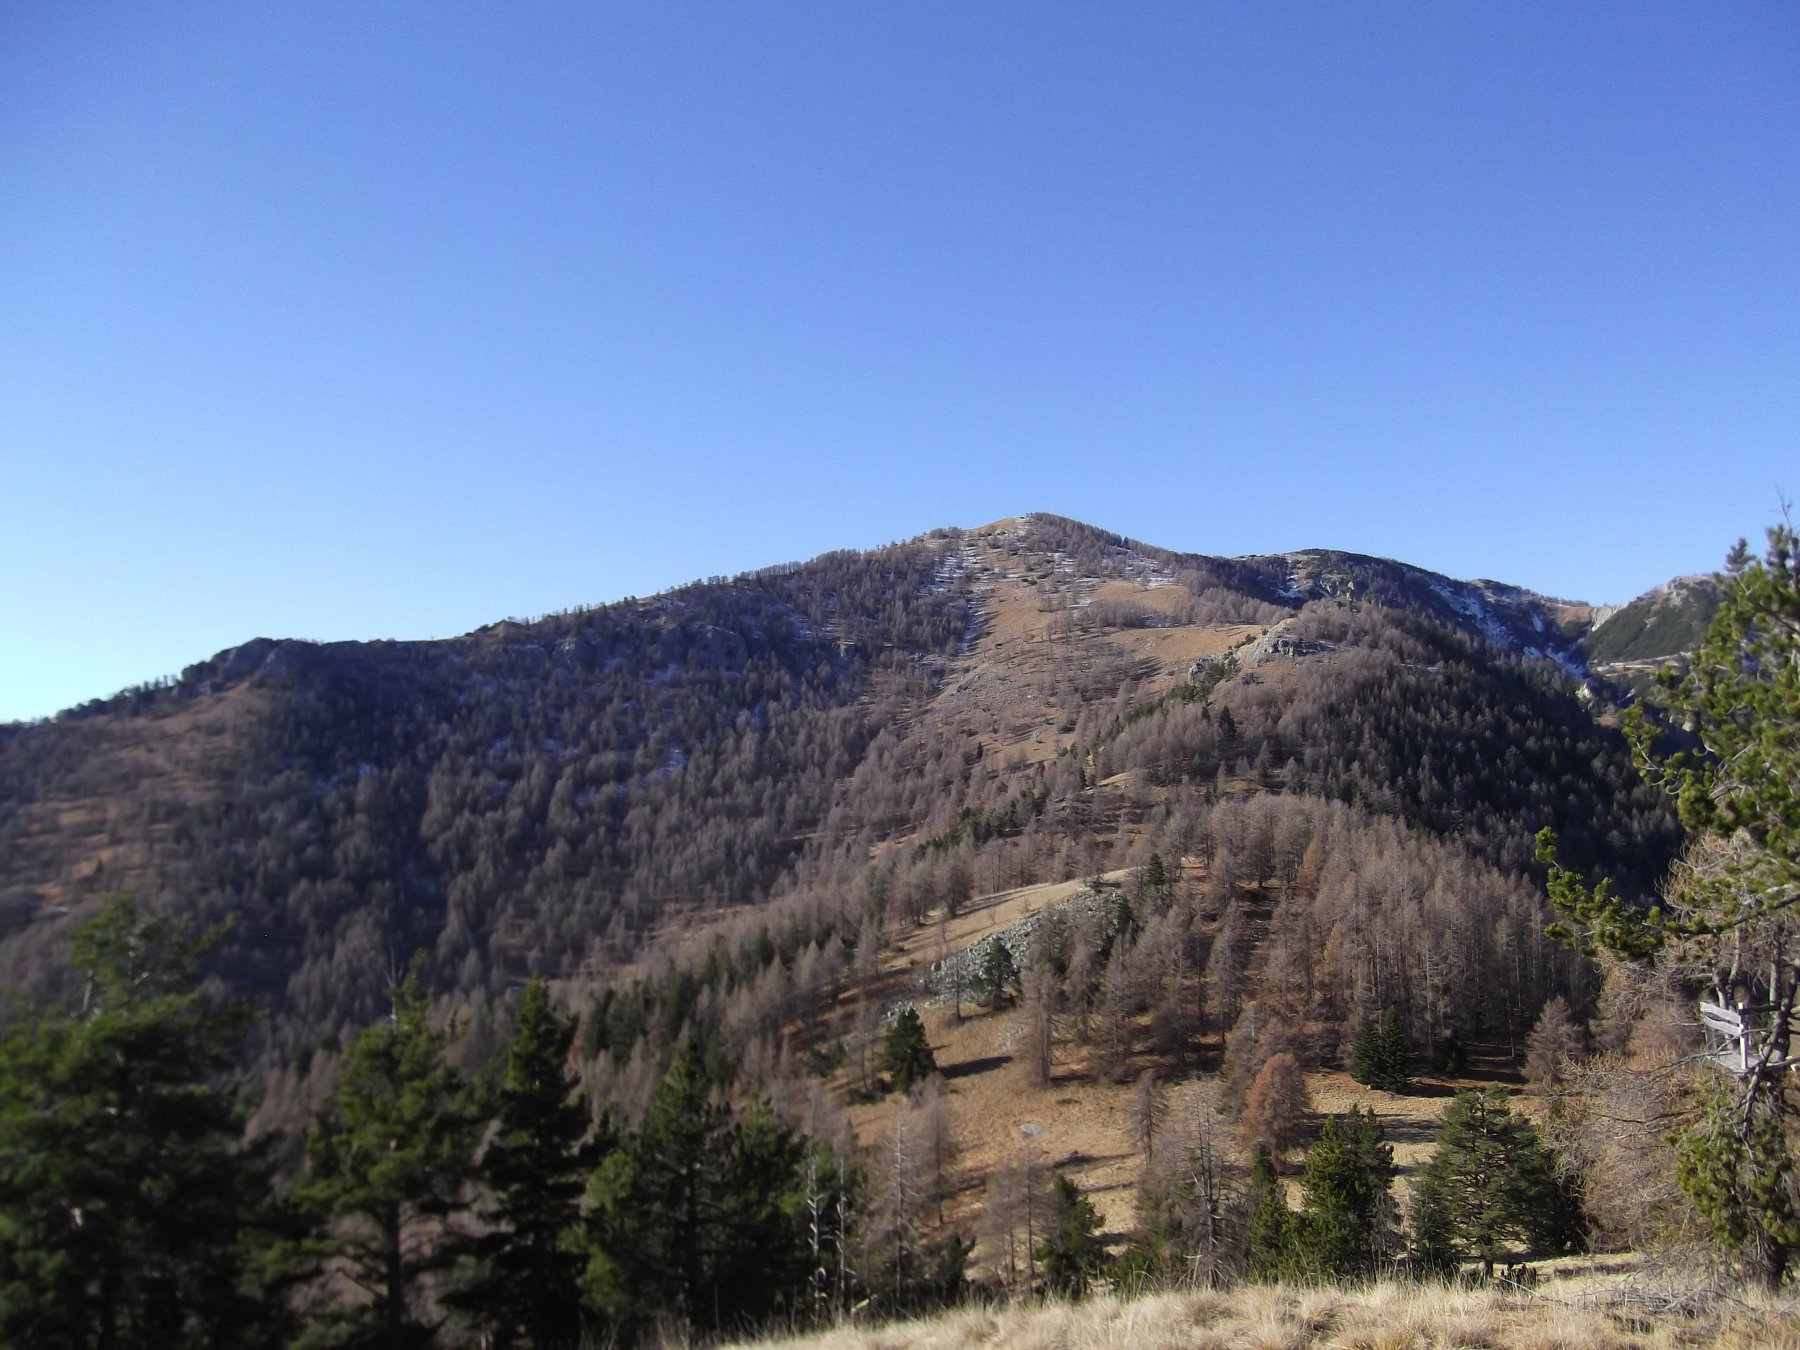 La dorsale che sale al Monte Agnellino dal Ribe de Bernou.